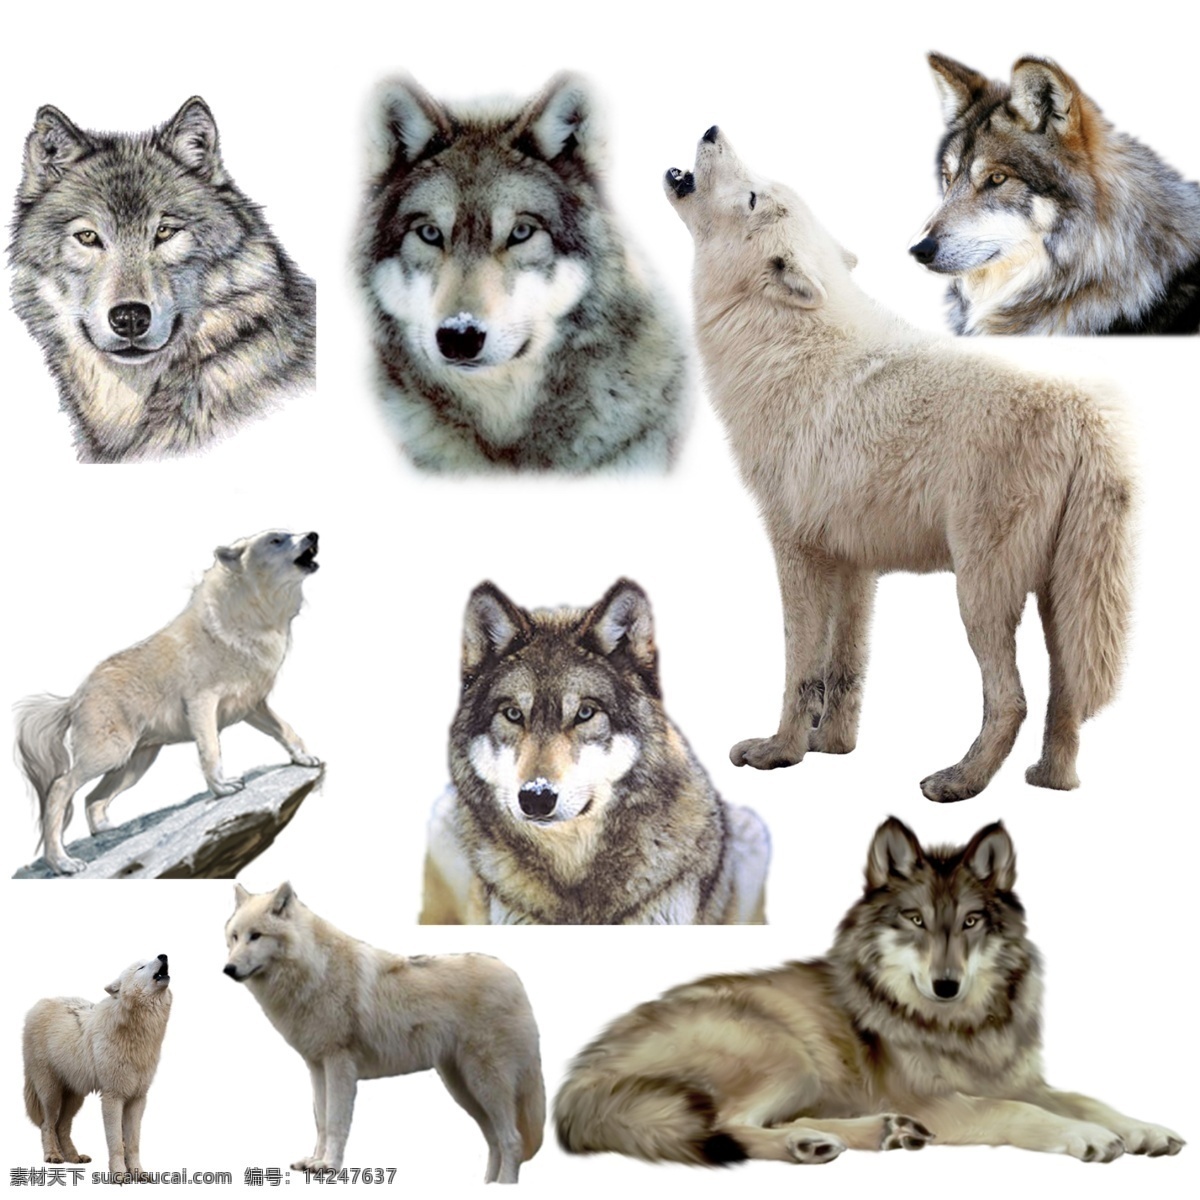 狼 免 扣 高清 素材图片 狼png 狼psd文件 狼免扣素材 狼素材 狼png素材 动物 生物世界 野生动物